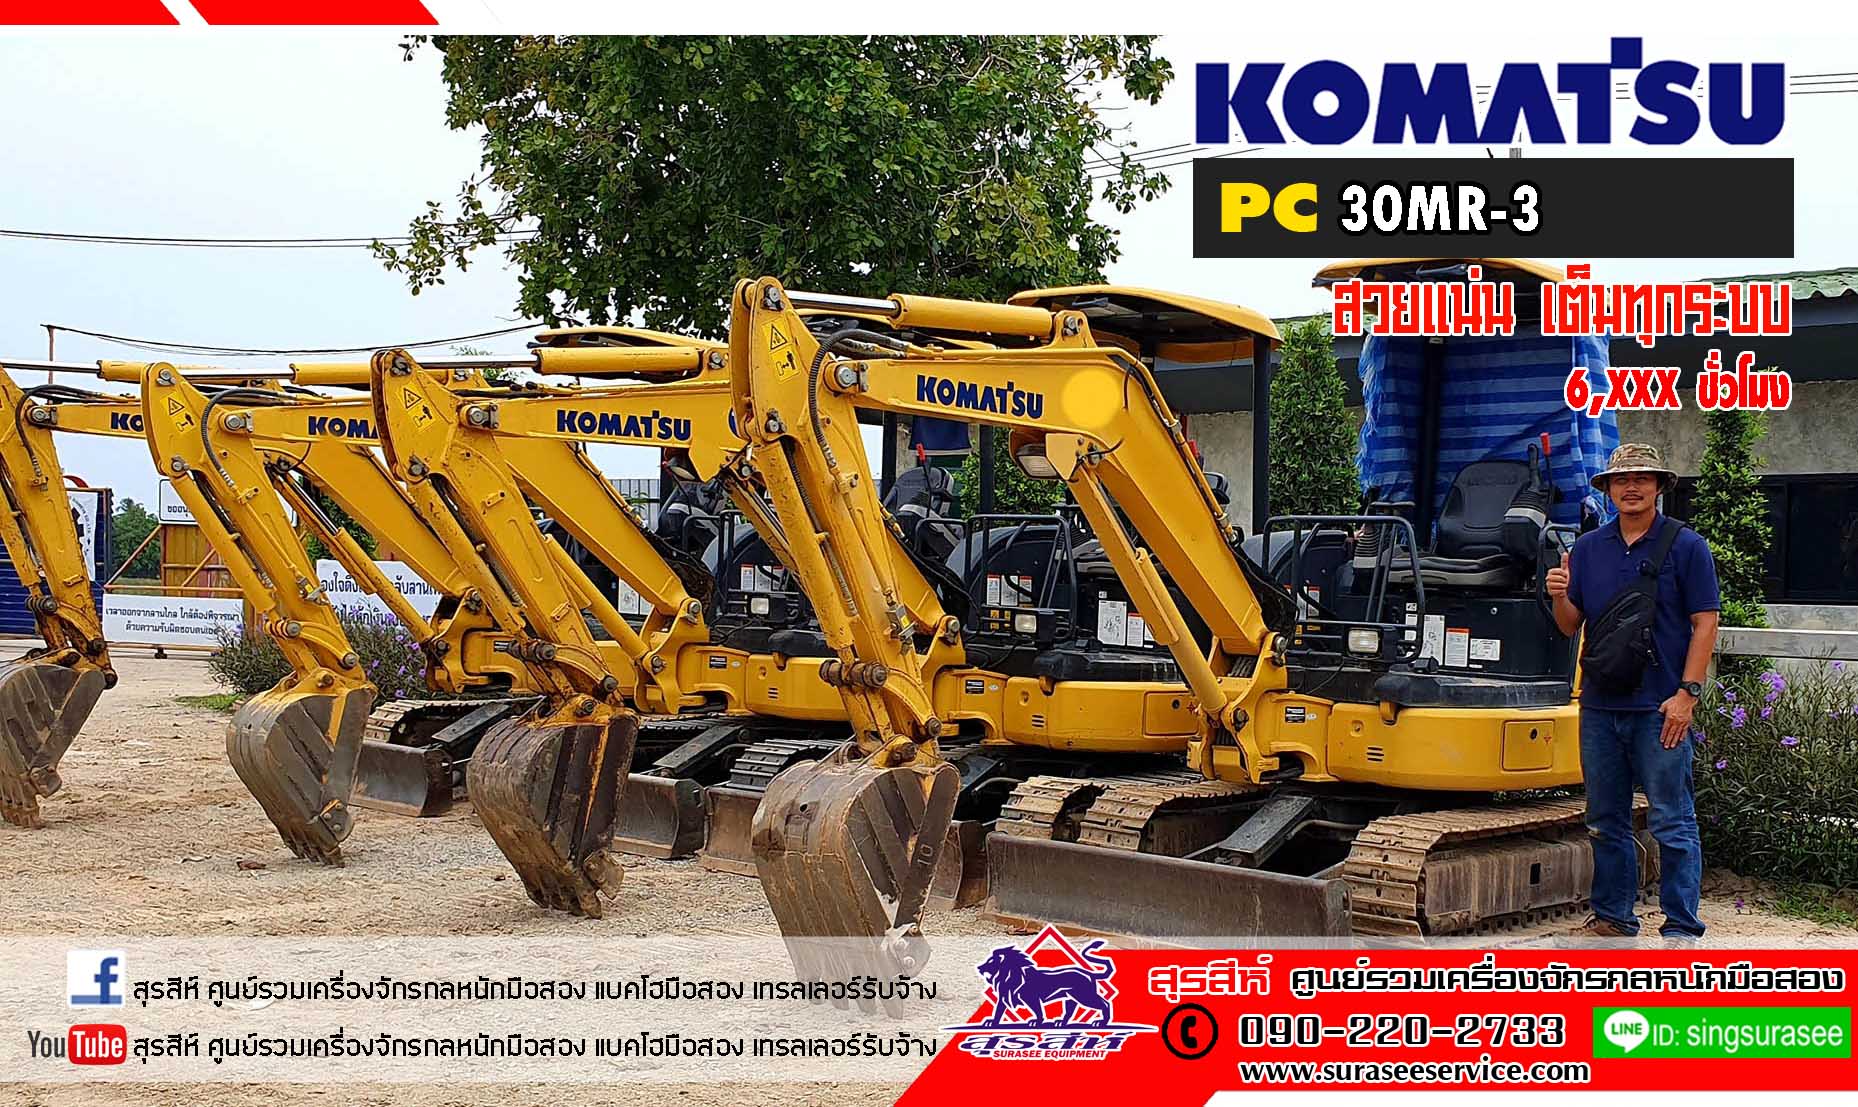 ราคาเริ่มต้น 550,000 บาท KOMATSU PC30MR-3 ล๊อตใหญ่ 6-7 พันชั่วโมง